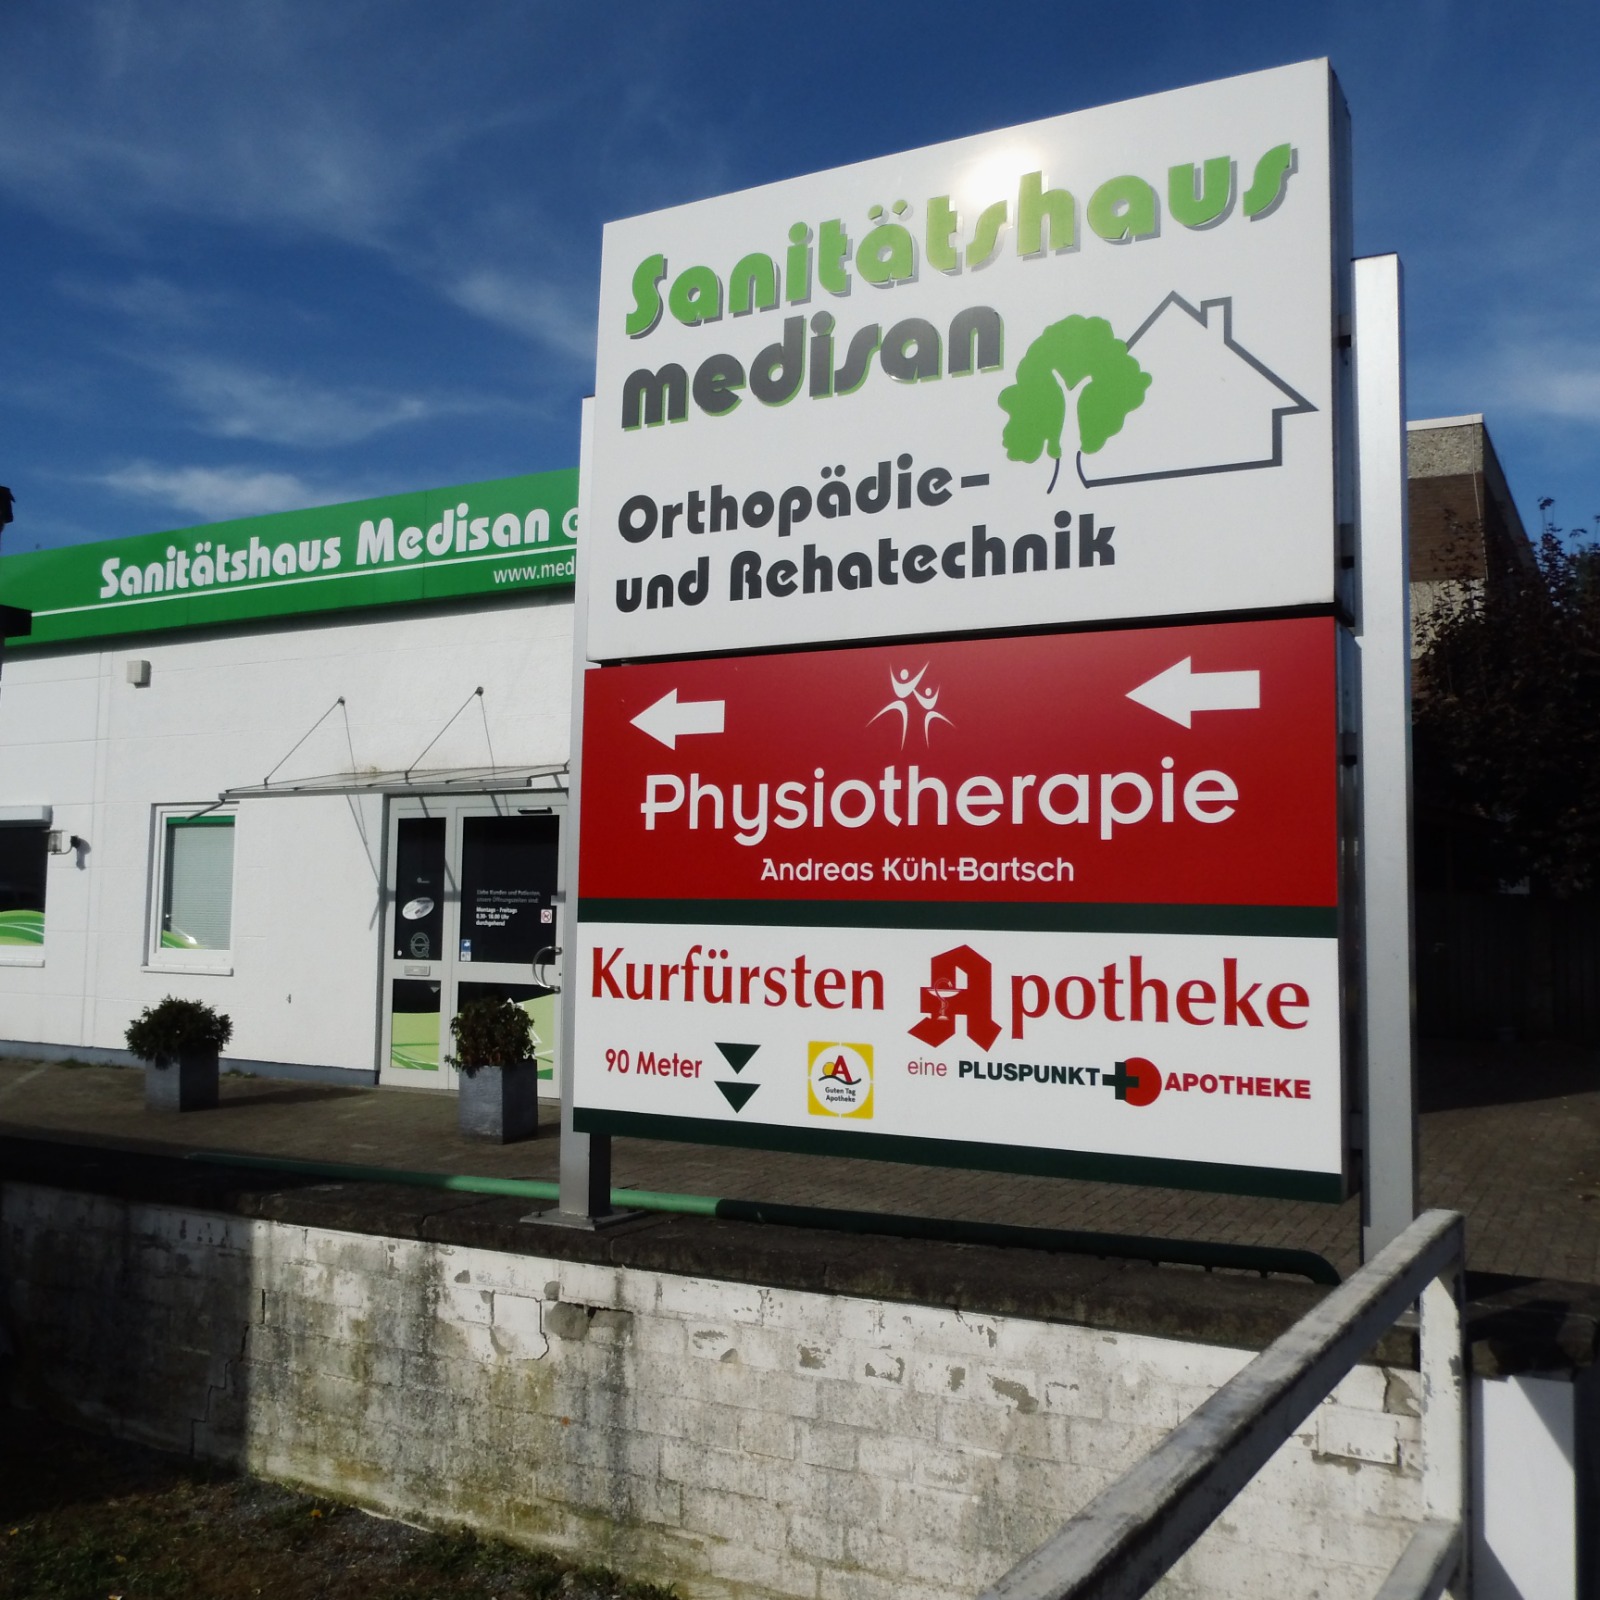 Praxis für Physiotherapie Andreas Kühl-Bartsch, Sonneberger Str. 14 in Bremen